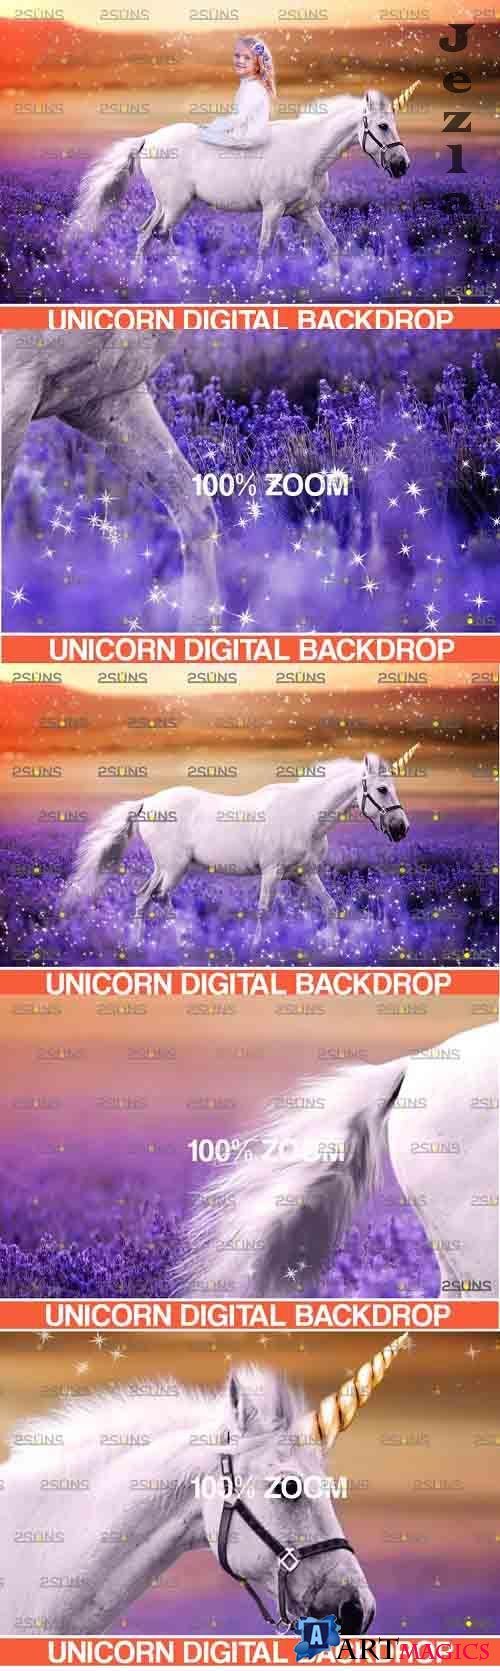 Majestic unicorn backdrop & Flower backdrop photoshop - 752110